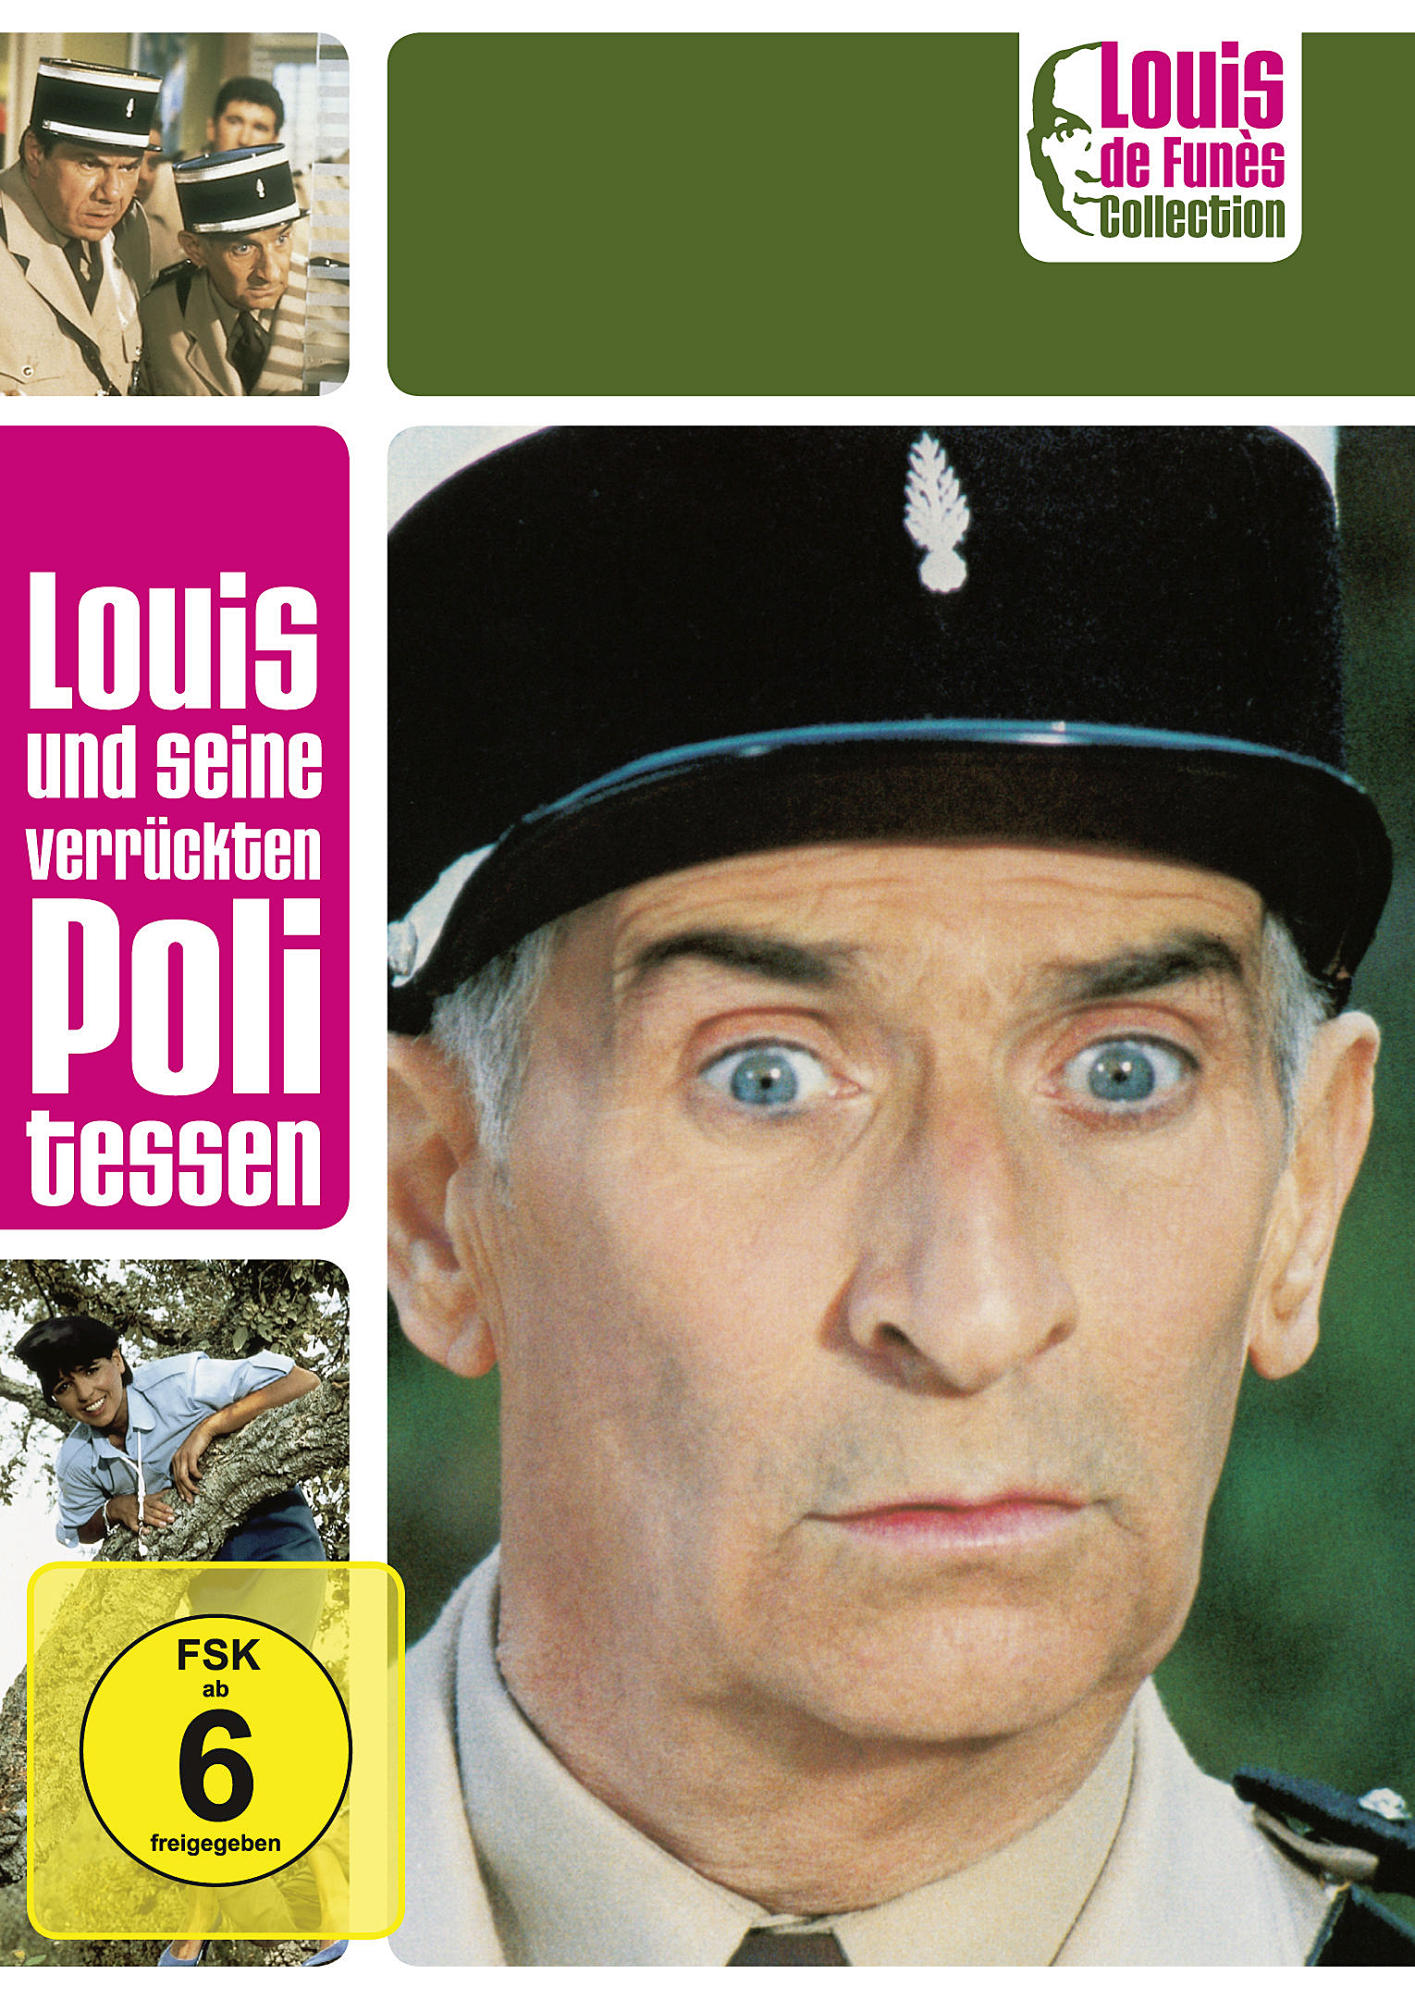 Louis und seine Funès Collection DVD Politessen de verrückten - Louis